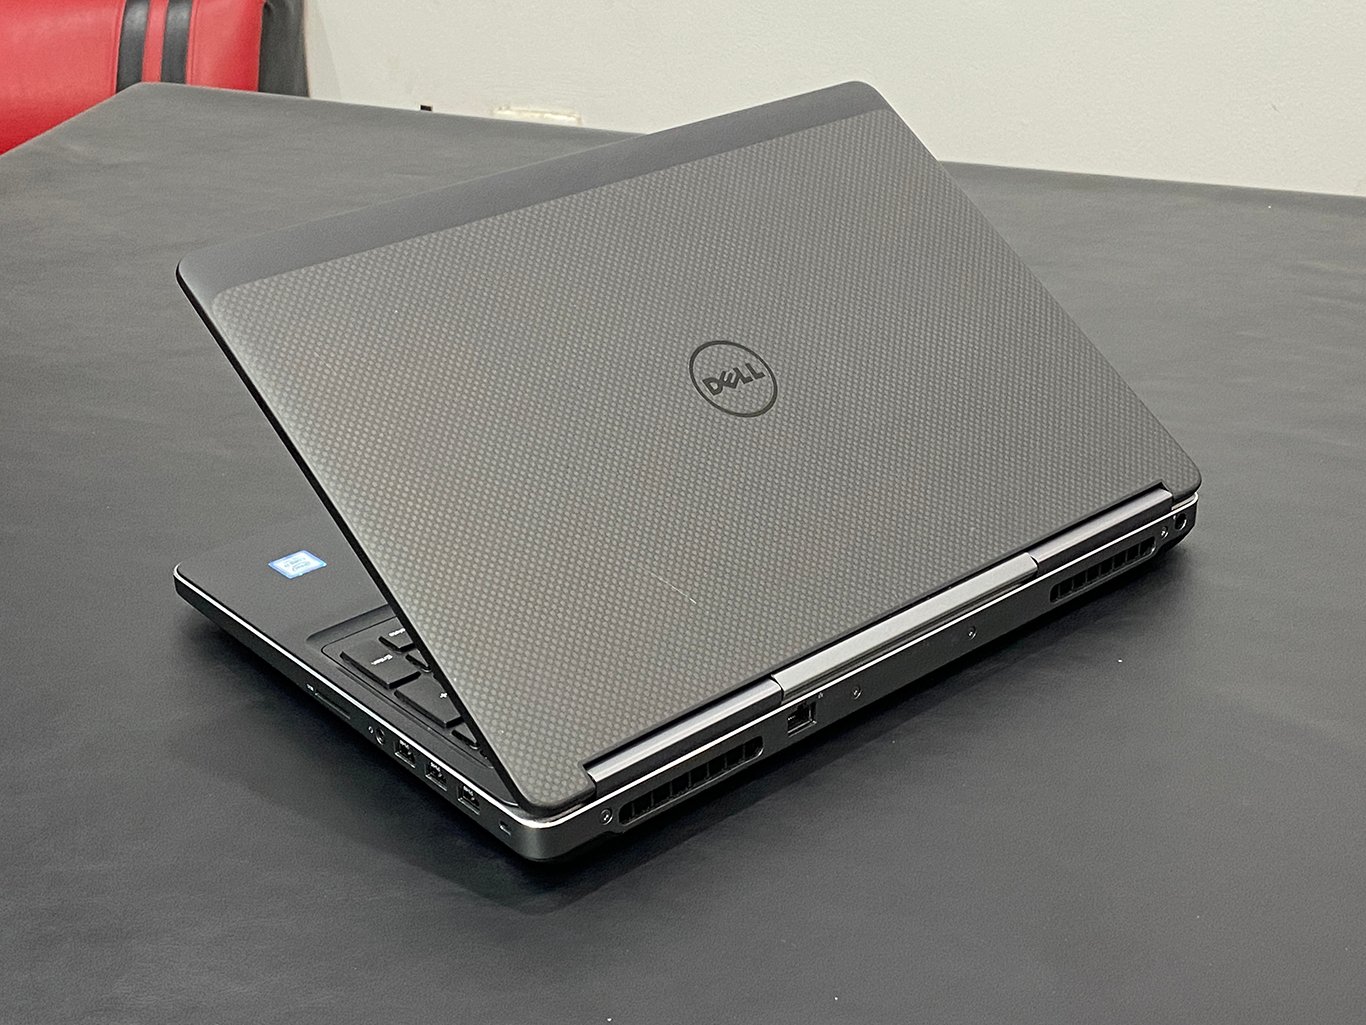 Dell Precision 7510 - Laptop đáng mua trong tầm giá dưới 20 triệu